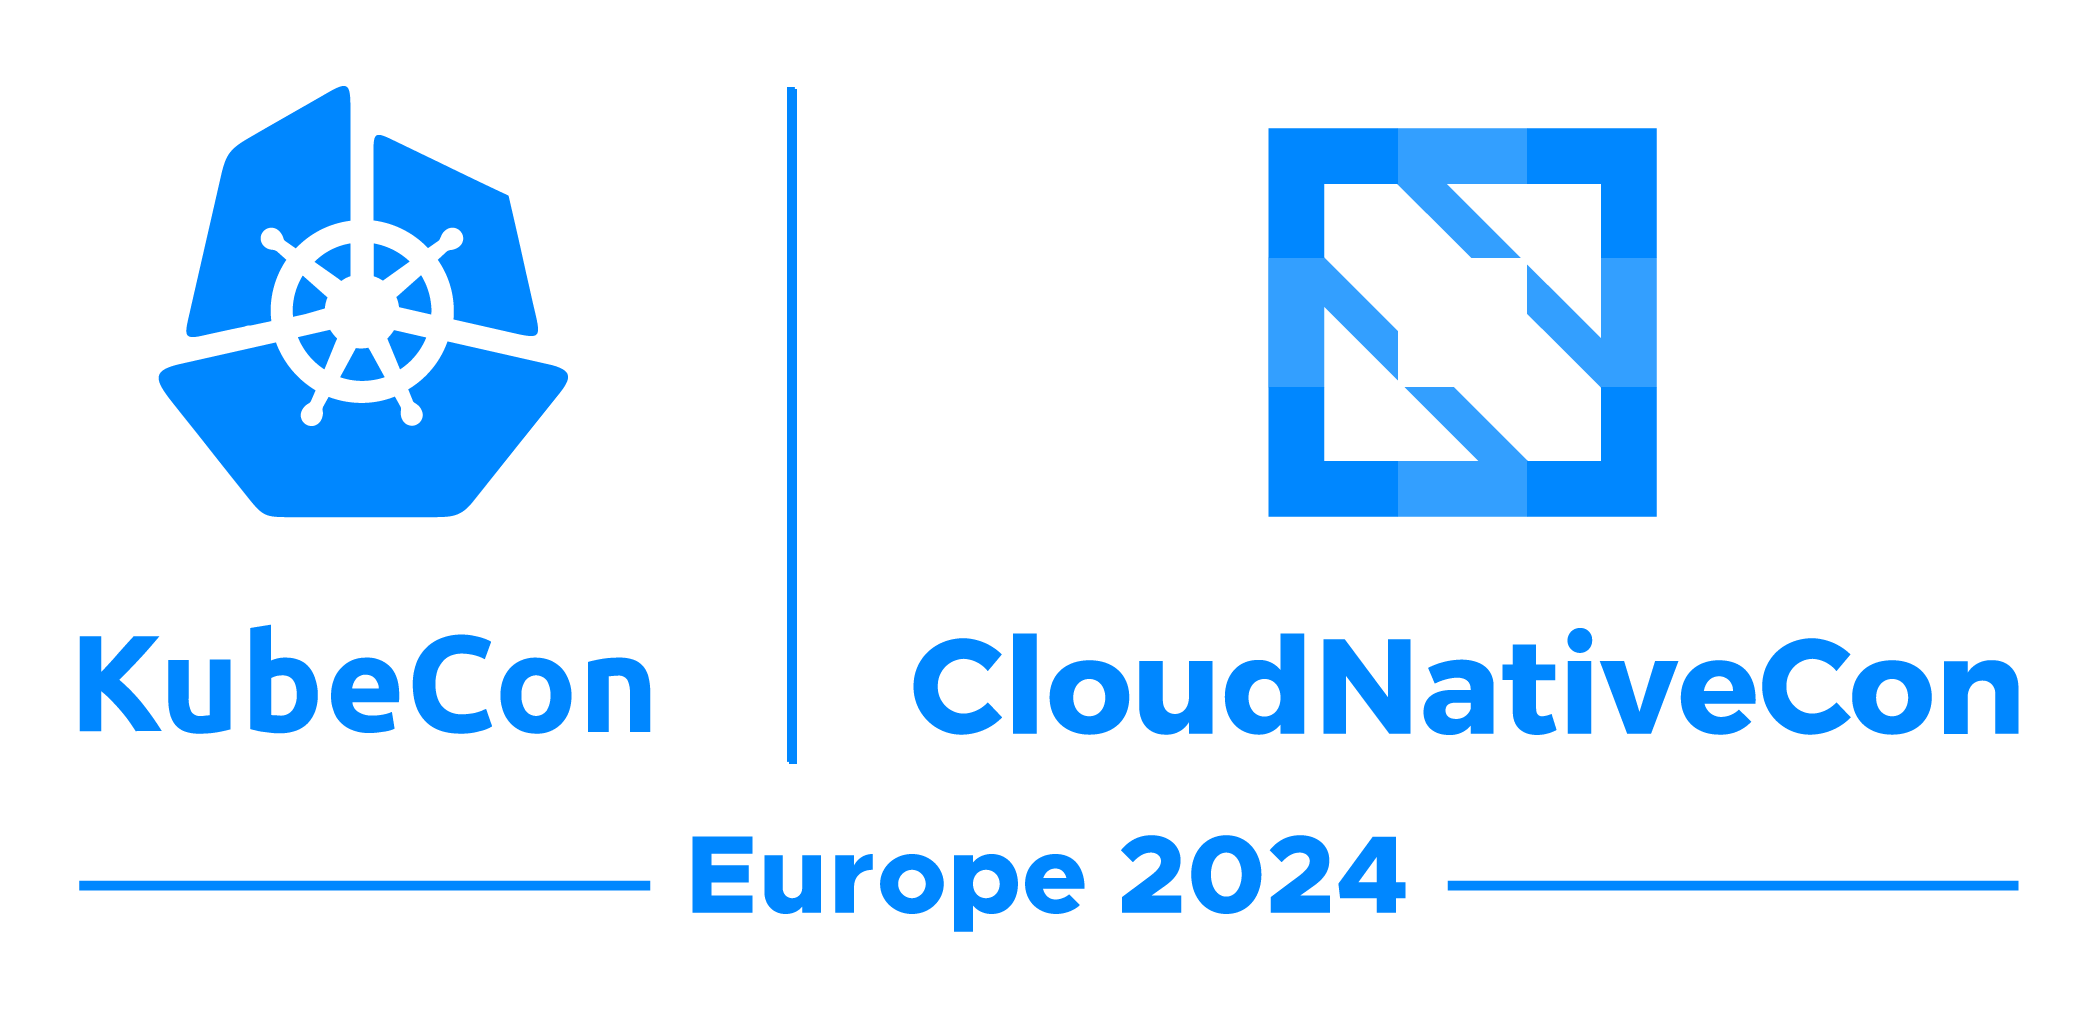 KubeCon + CloudNativeCon Europe 2024